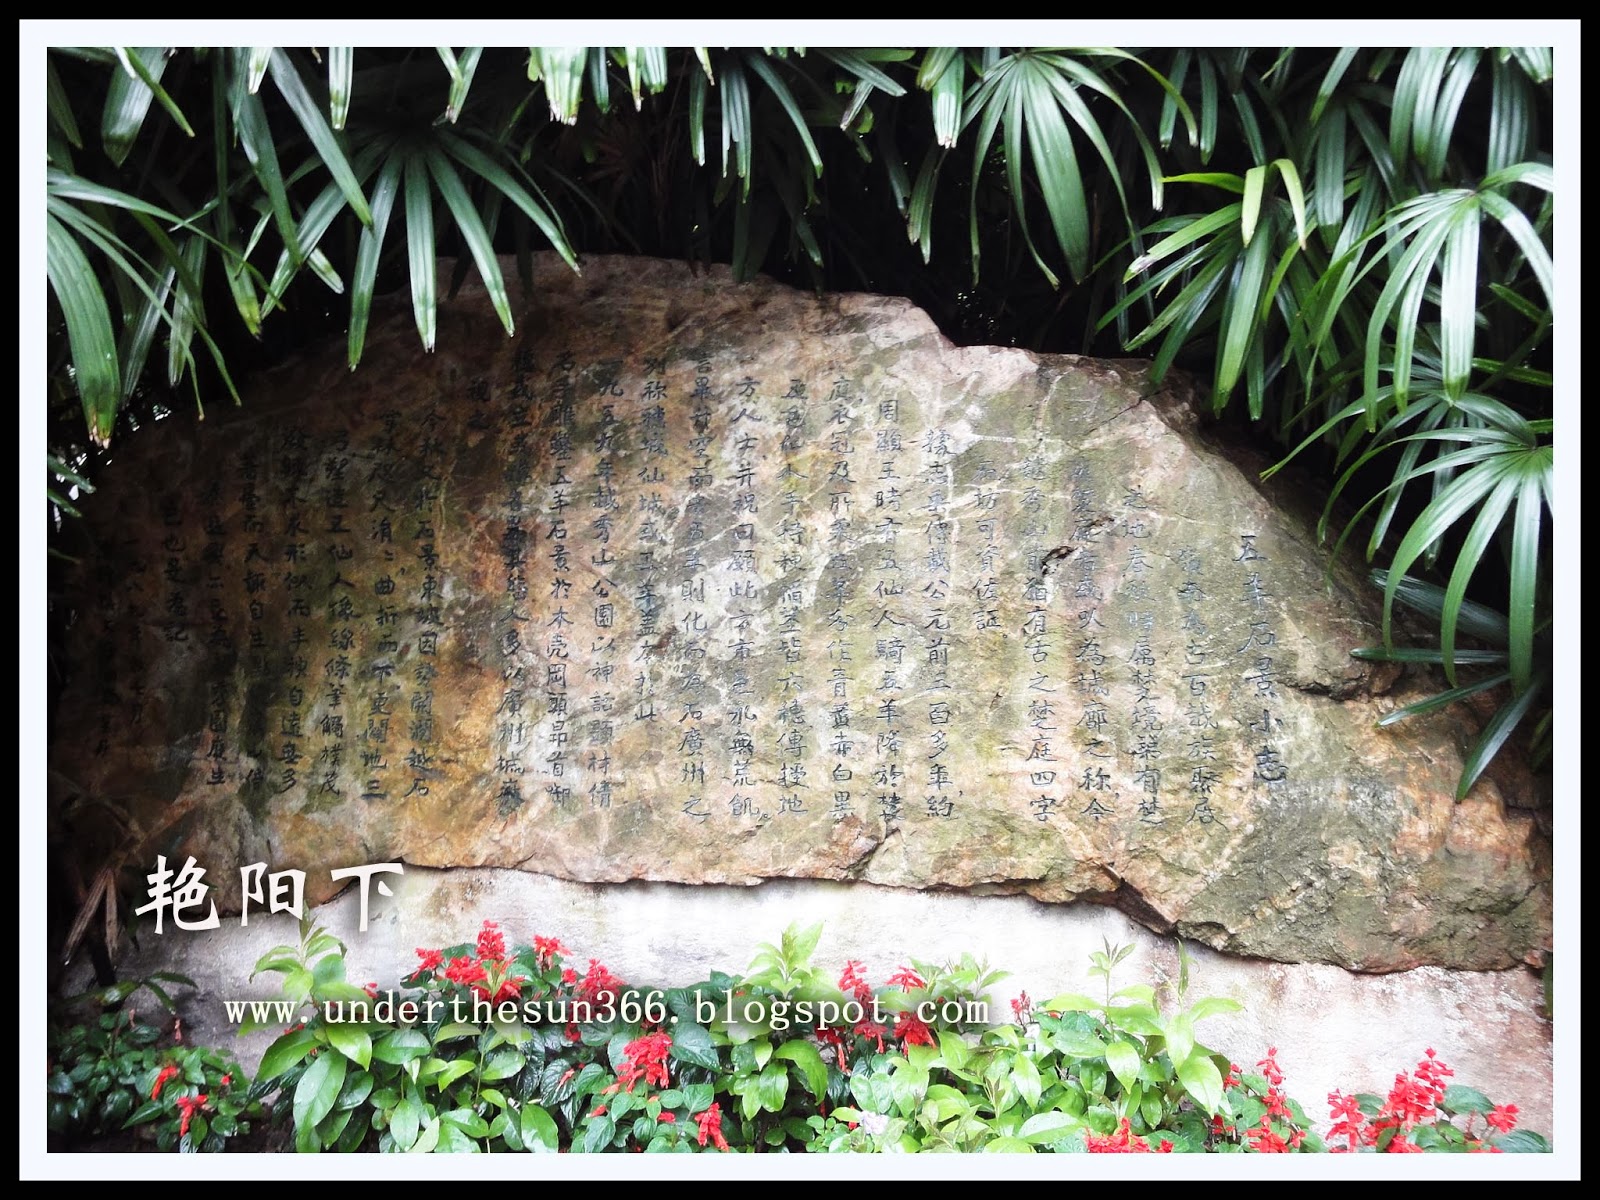 雨中游羊城 (5) ~ 越秀公园——中山纪念碑、五羊石像